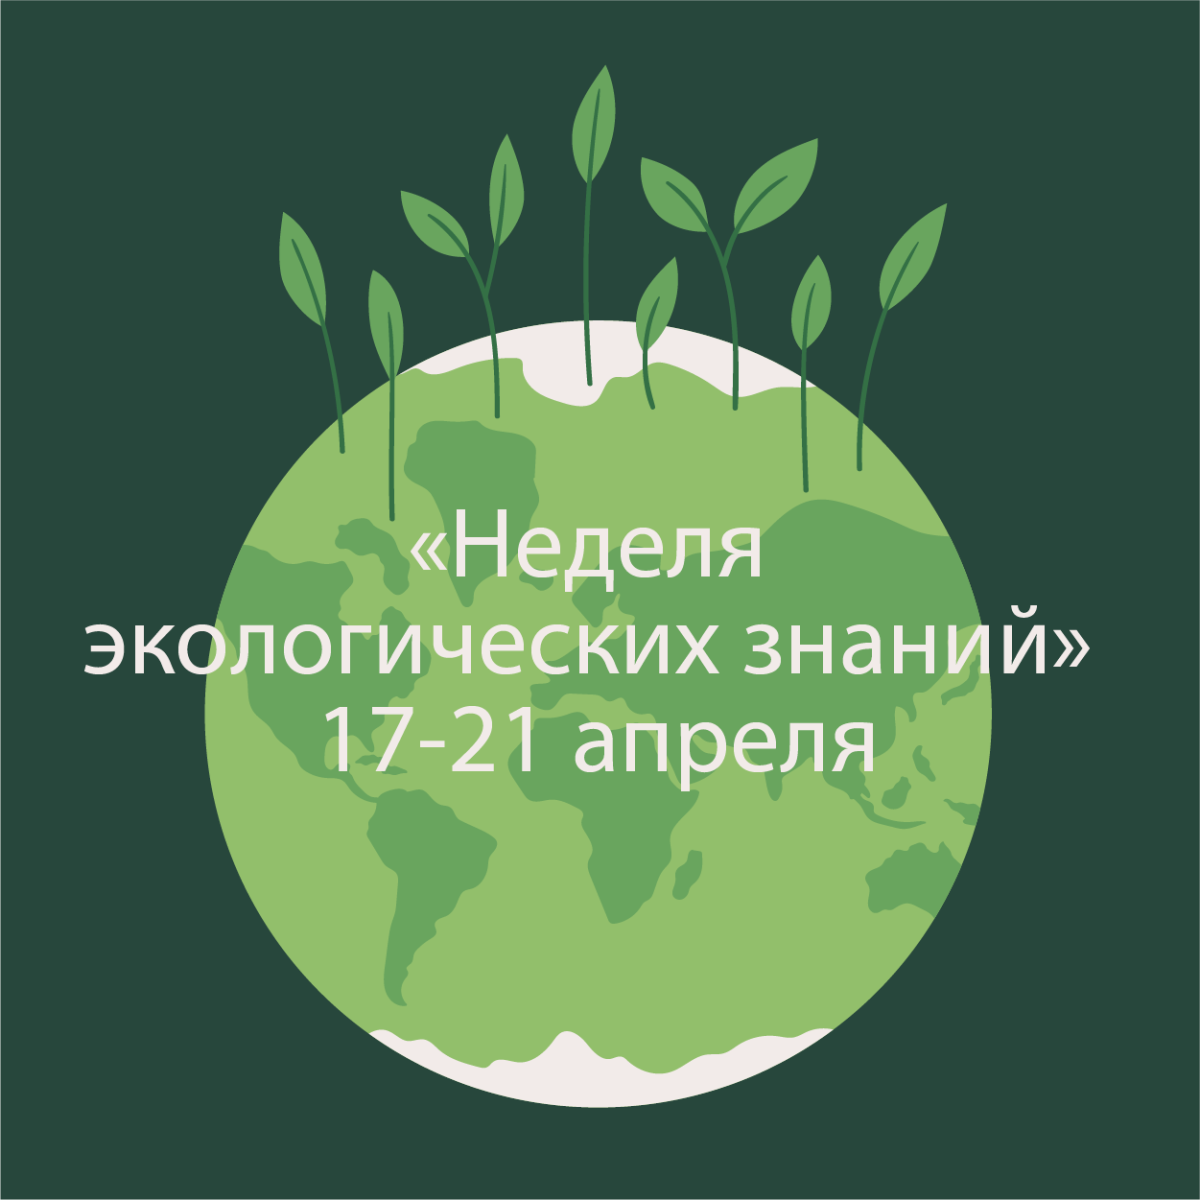 День экологических знаний. Неделя экологических знаний. День экологических знаний картинки. Неделя экологических знаний логотип.